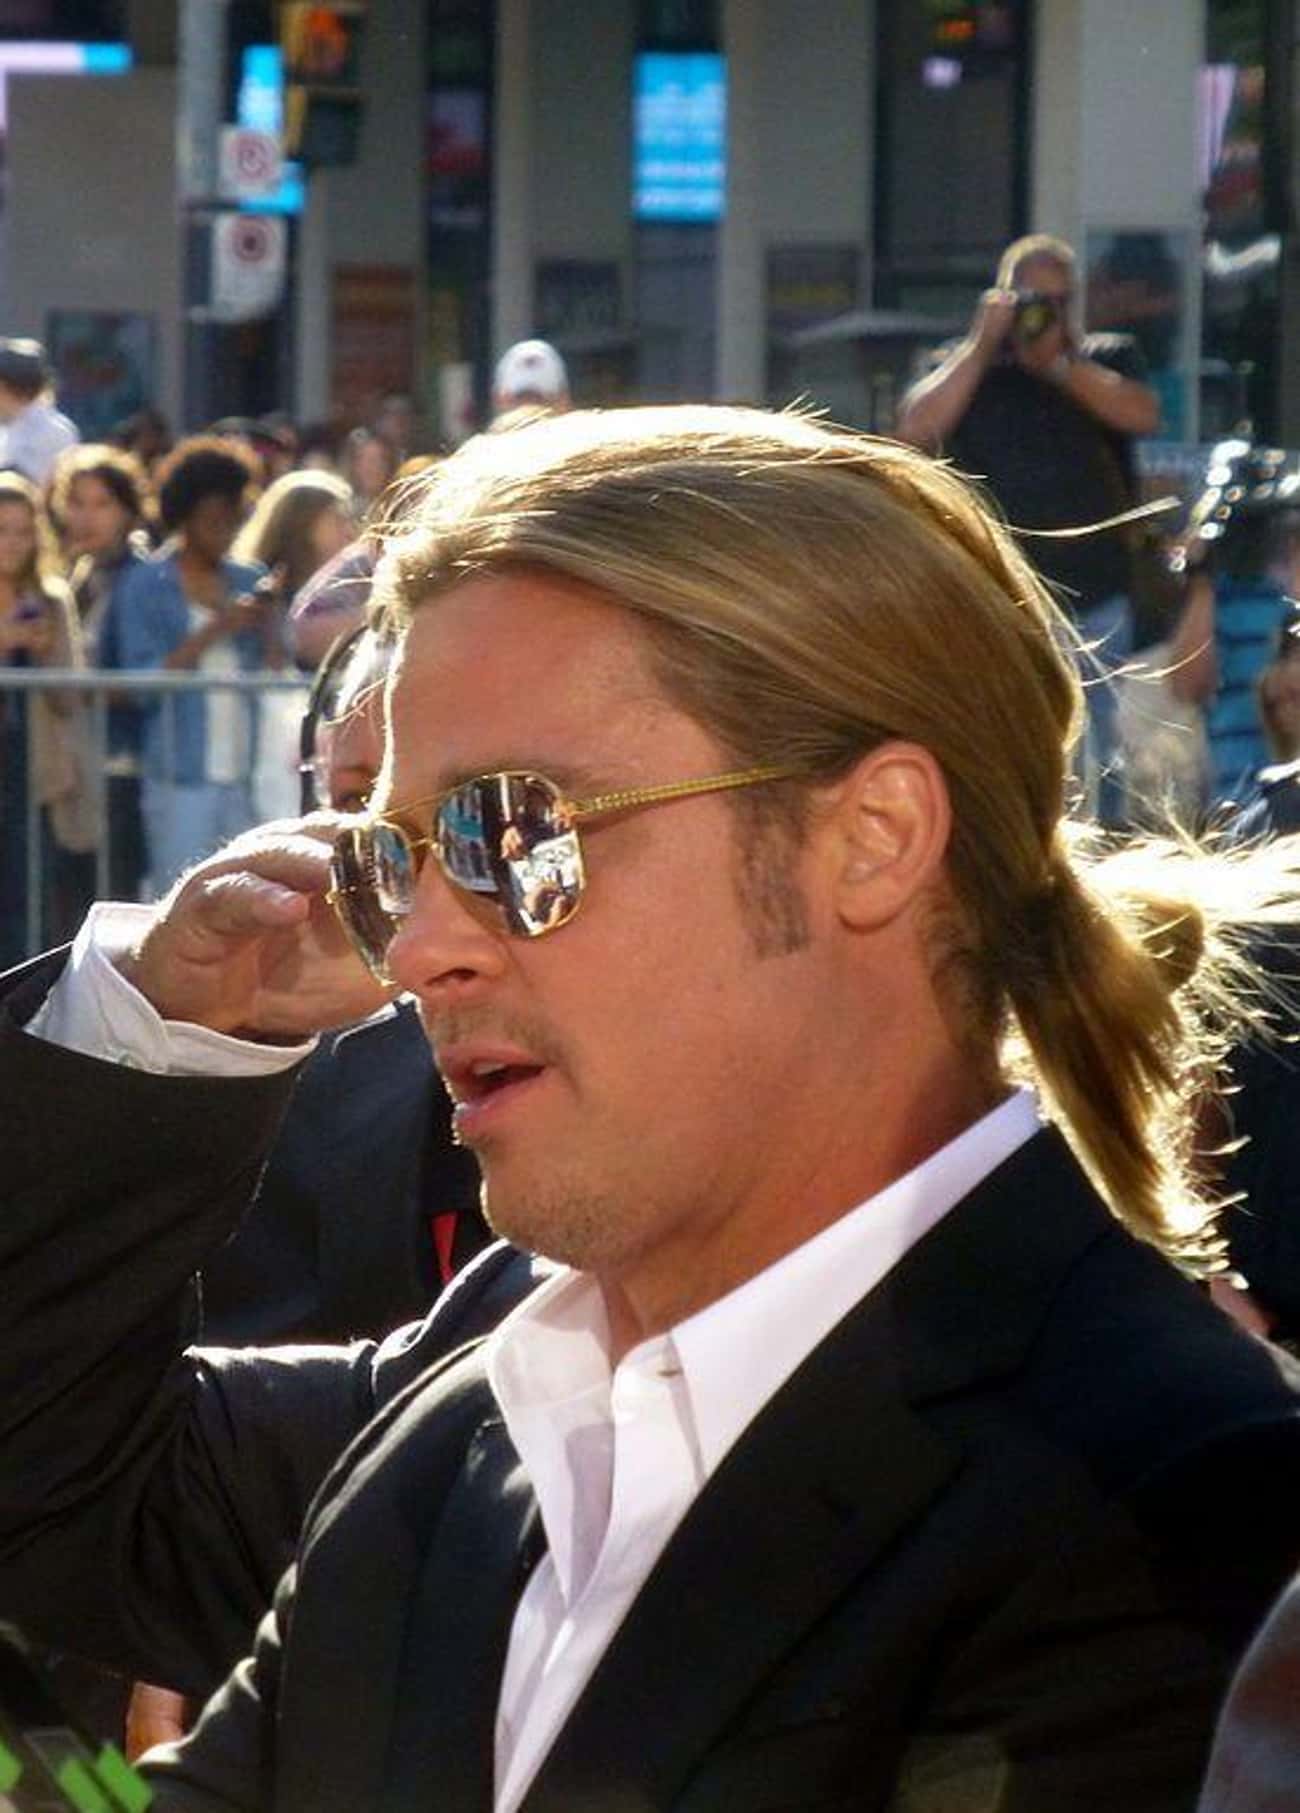 Brad Pitt Photo U330?auto=format&q=60&fit=crop&fm=pjpg&dpr=2&w=650